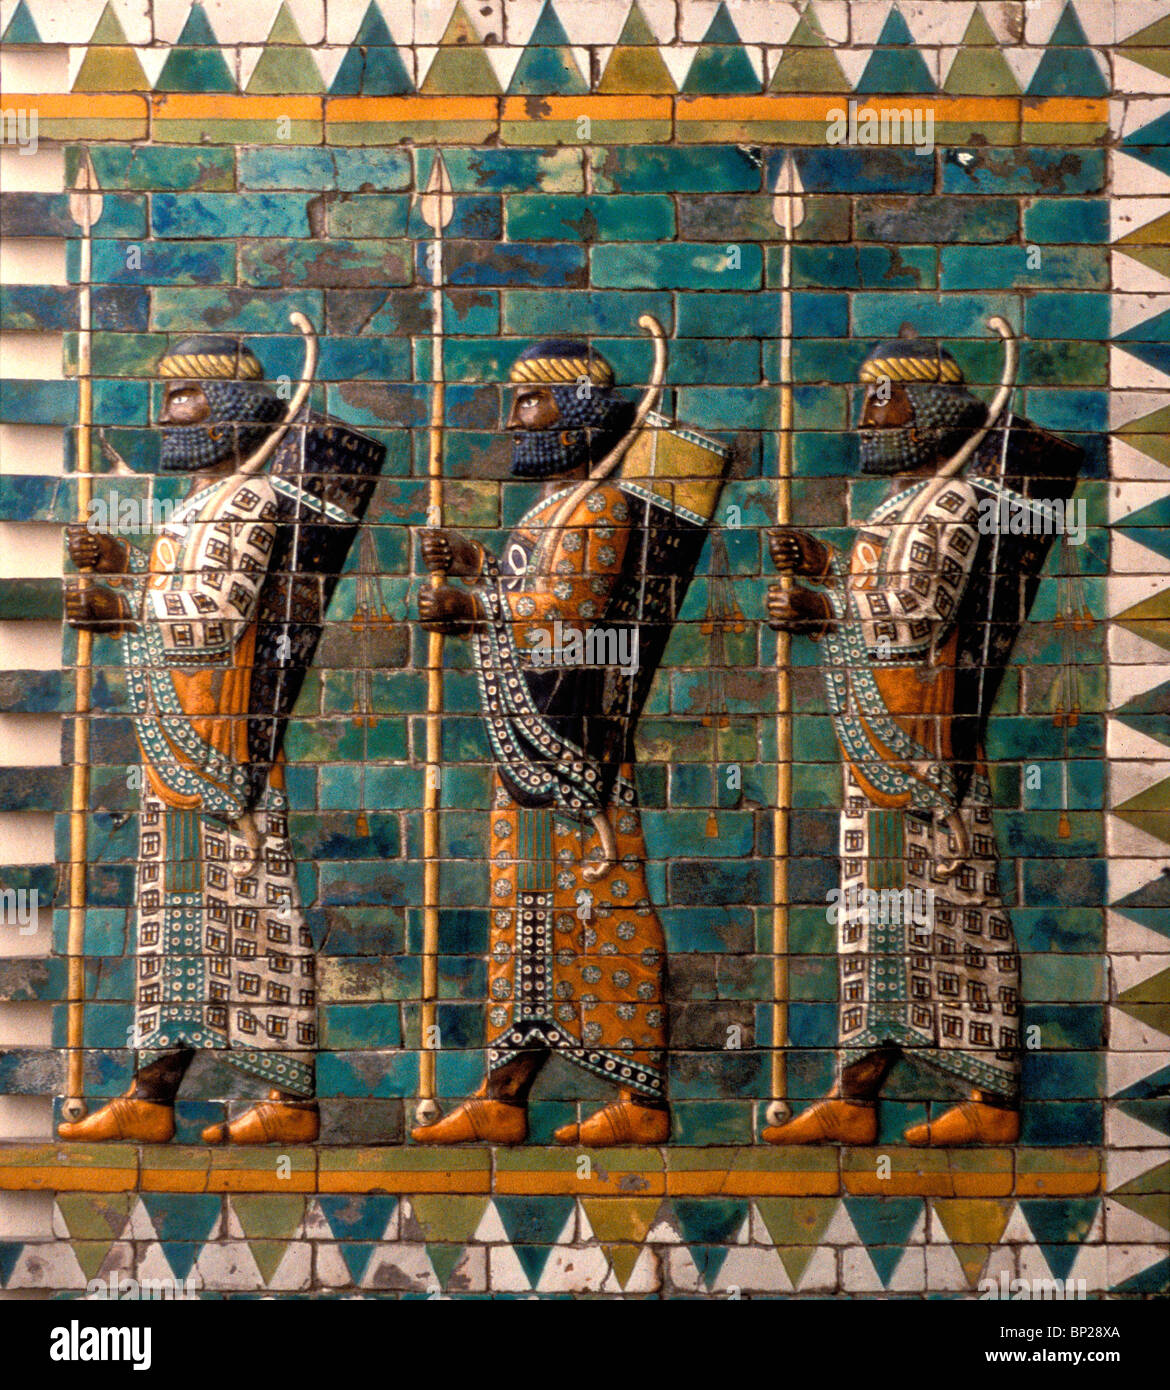 ELAMITE guardia del ejército persa representado en pleno esplendor. Ladrillo vidriado DEL PALACIO AQUEMÉNIDA en Susa - Persia 6Th.C. Foto de stock